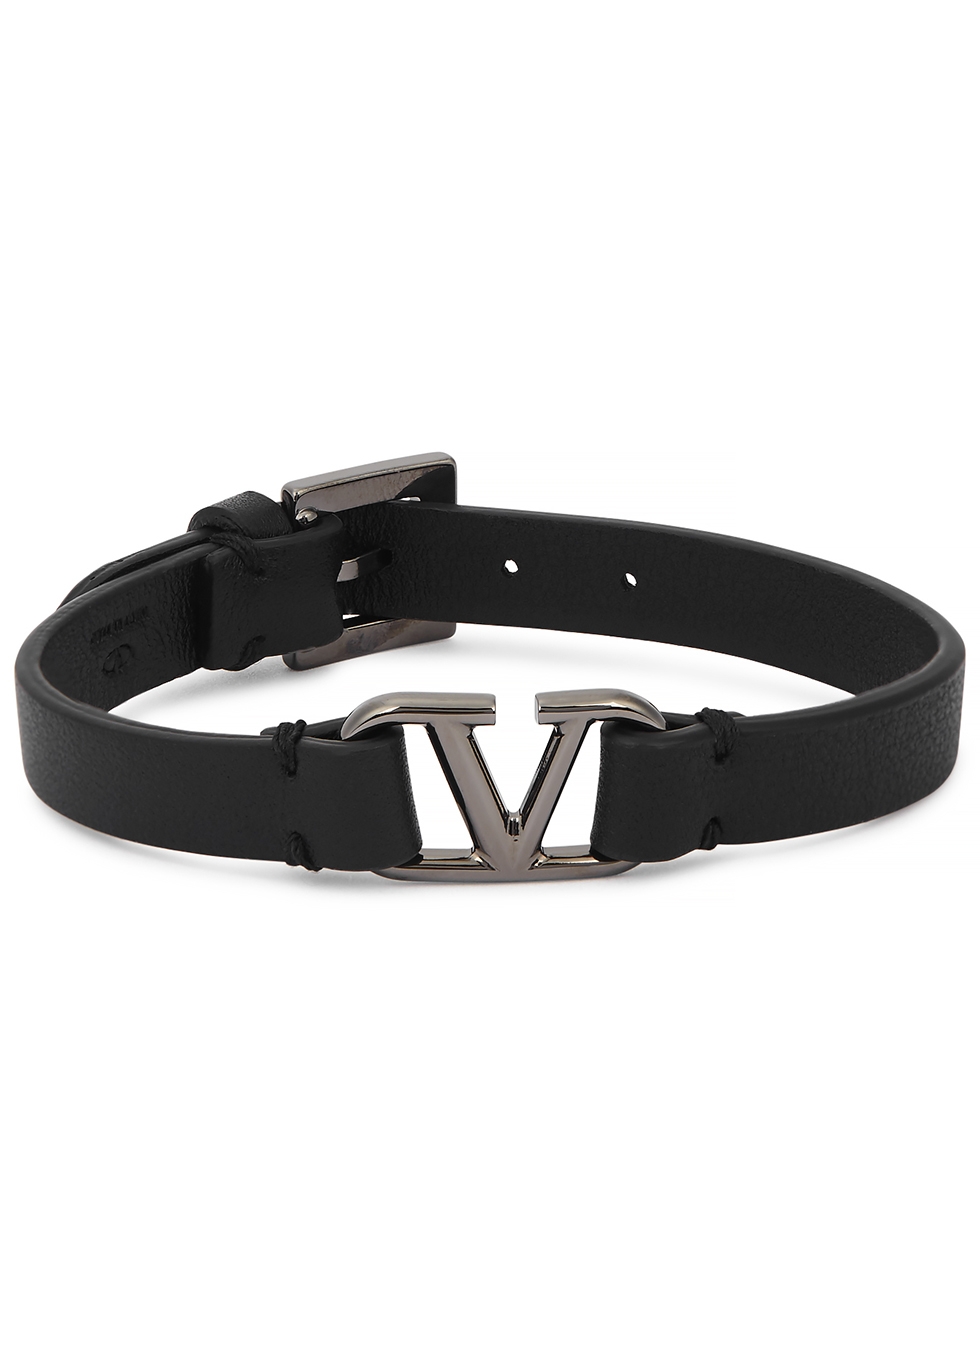 Valentino Garavani VLogo black leather bracelet - Harvey Nichols